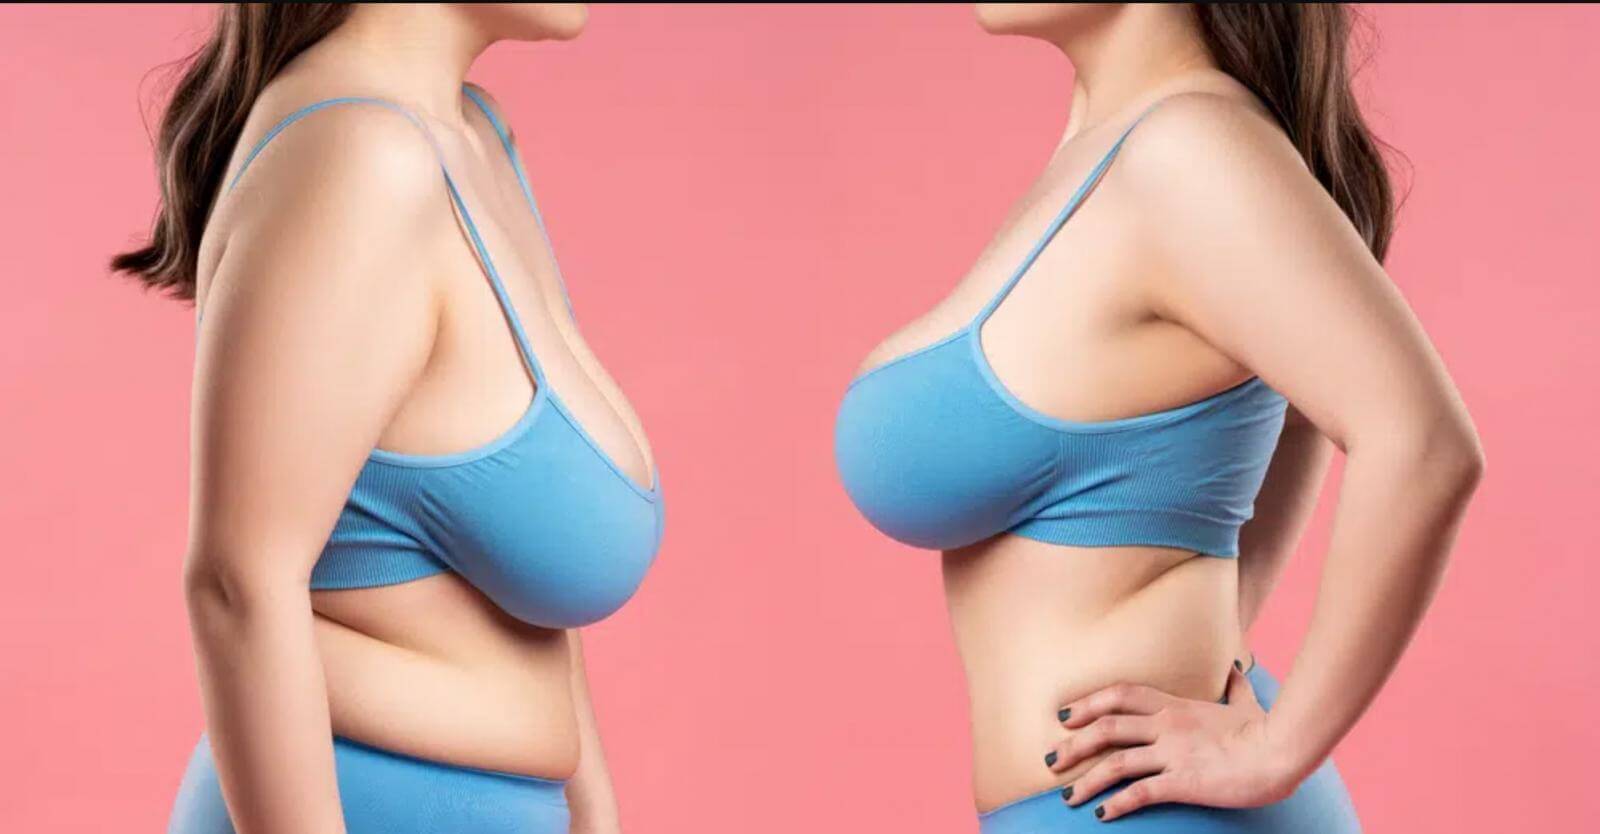 Рожавшие женщины чаще всего хотят исправить птоз груди